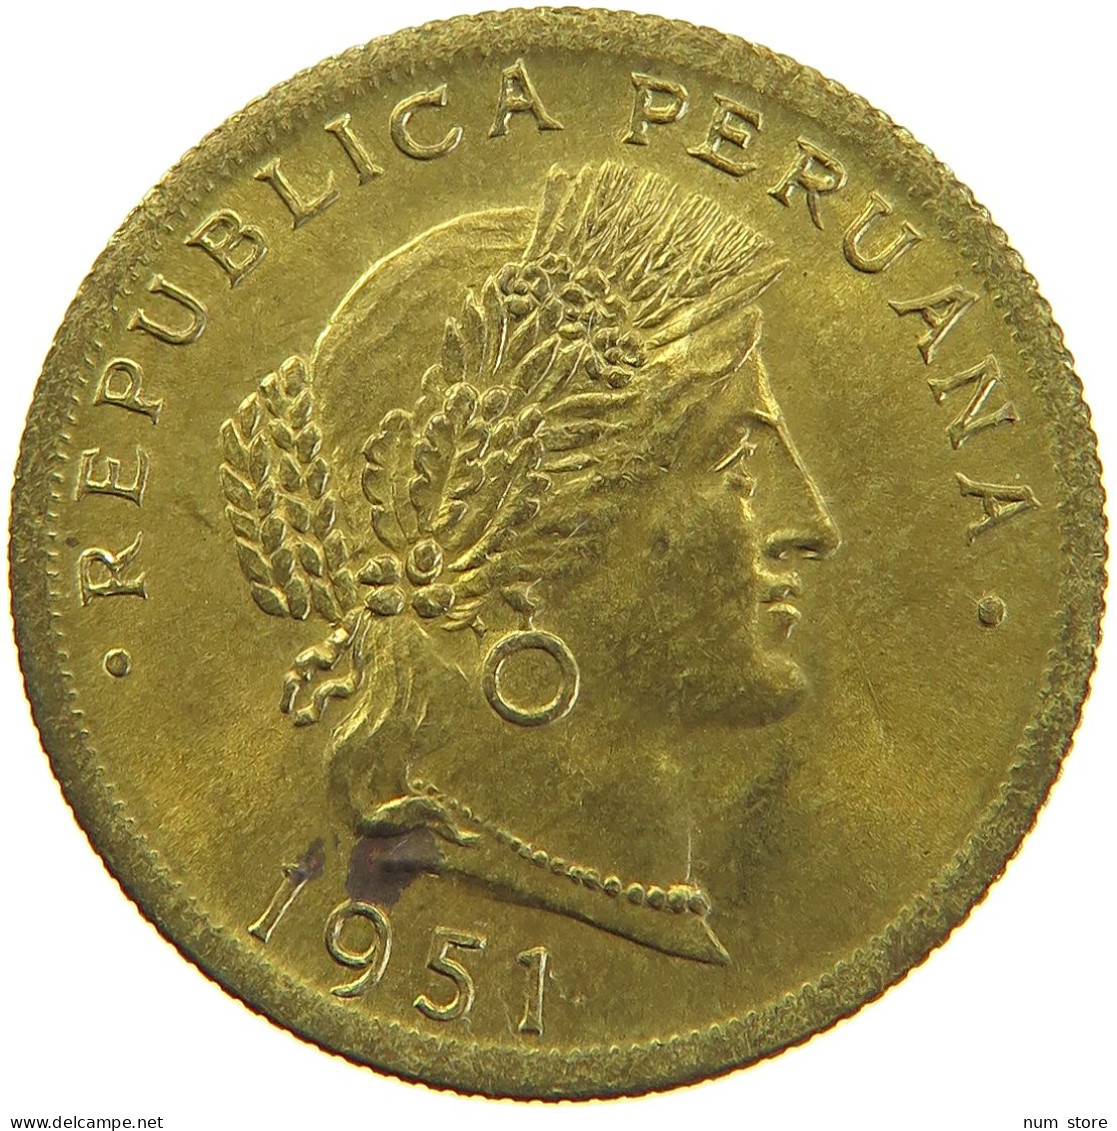 PERU 20 CENTAVOS 1951 #t030 0101 - Perú